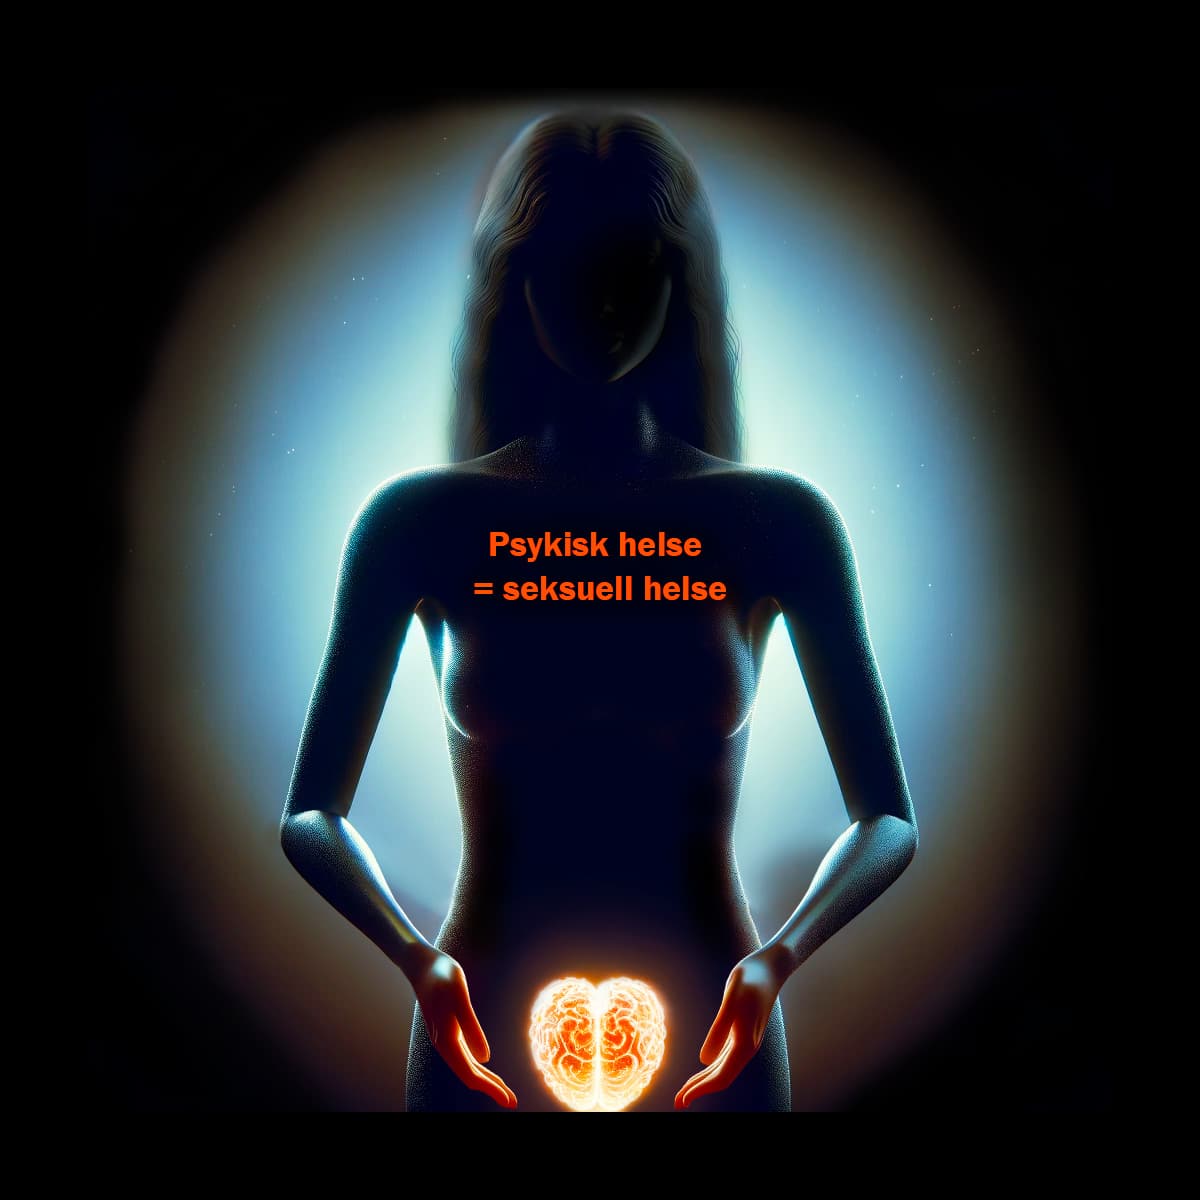 Silhouette av naken kvinne som holder en hjerne foran vagina. Tekst på bildet: Psykisk helse = seksuell helse